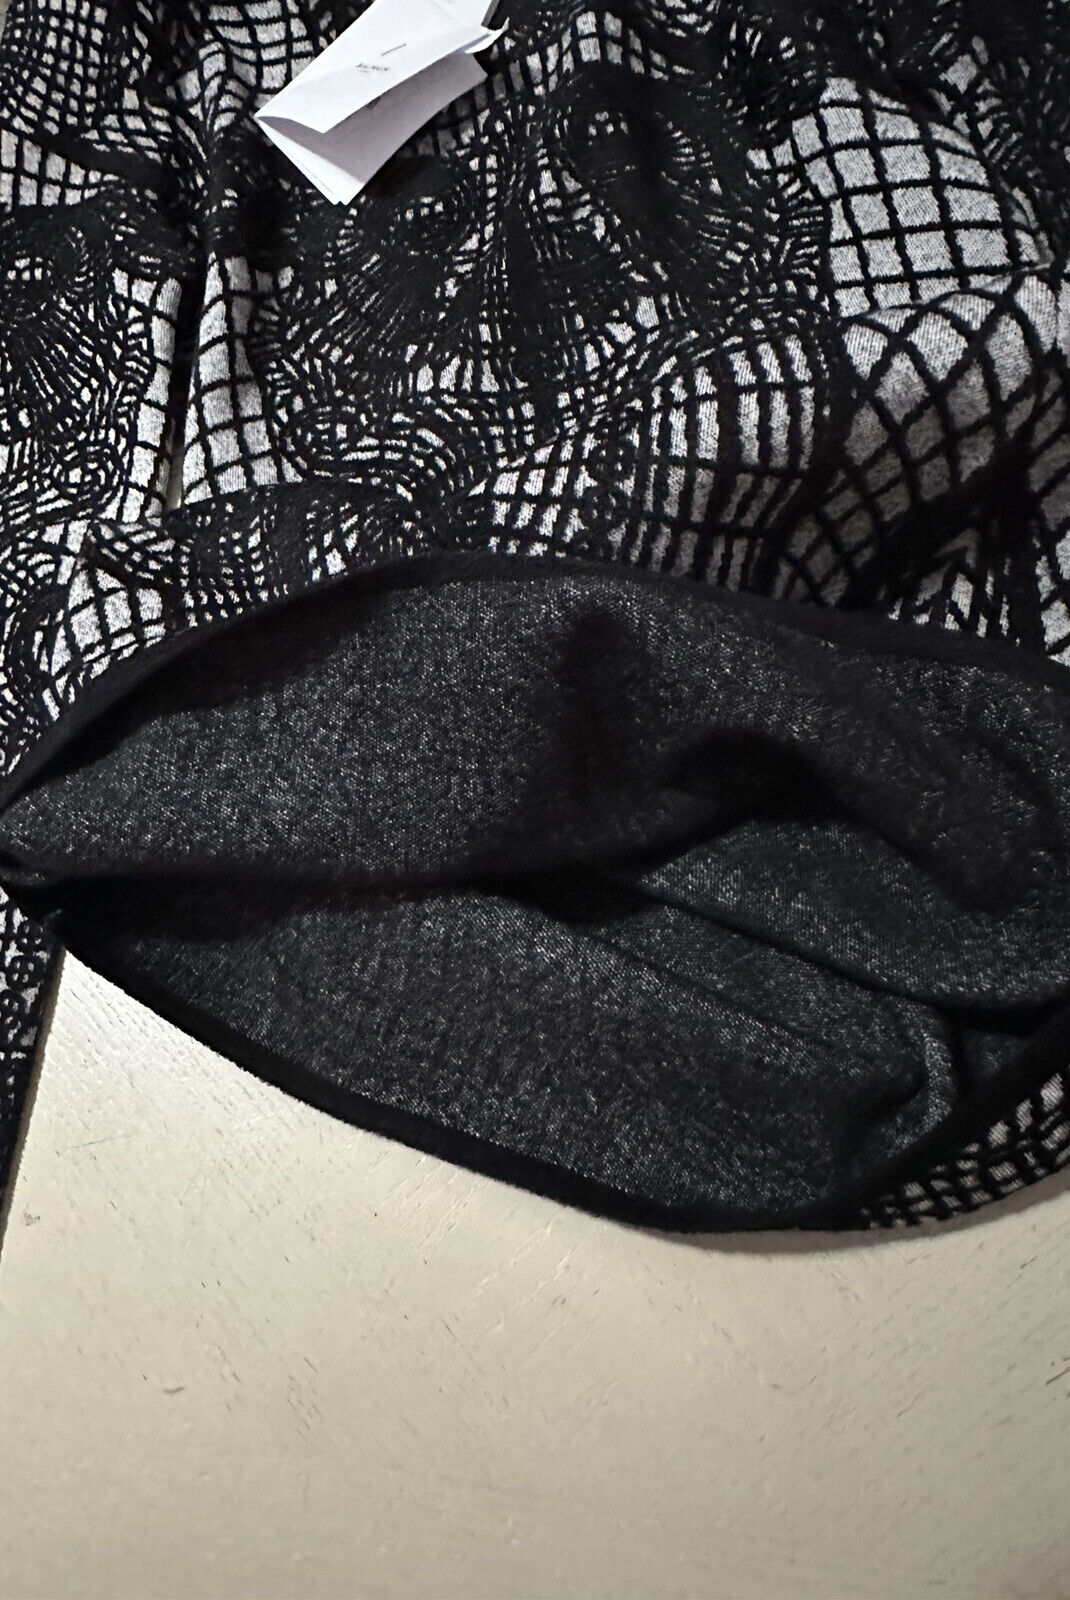 New $3050 Balmain Patterned-Knit Body-Con Minidress Black 44/12 Italy